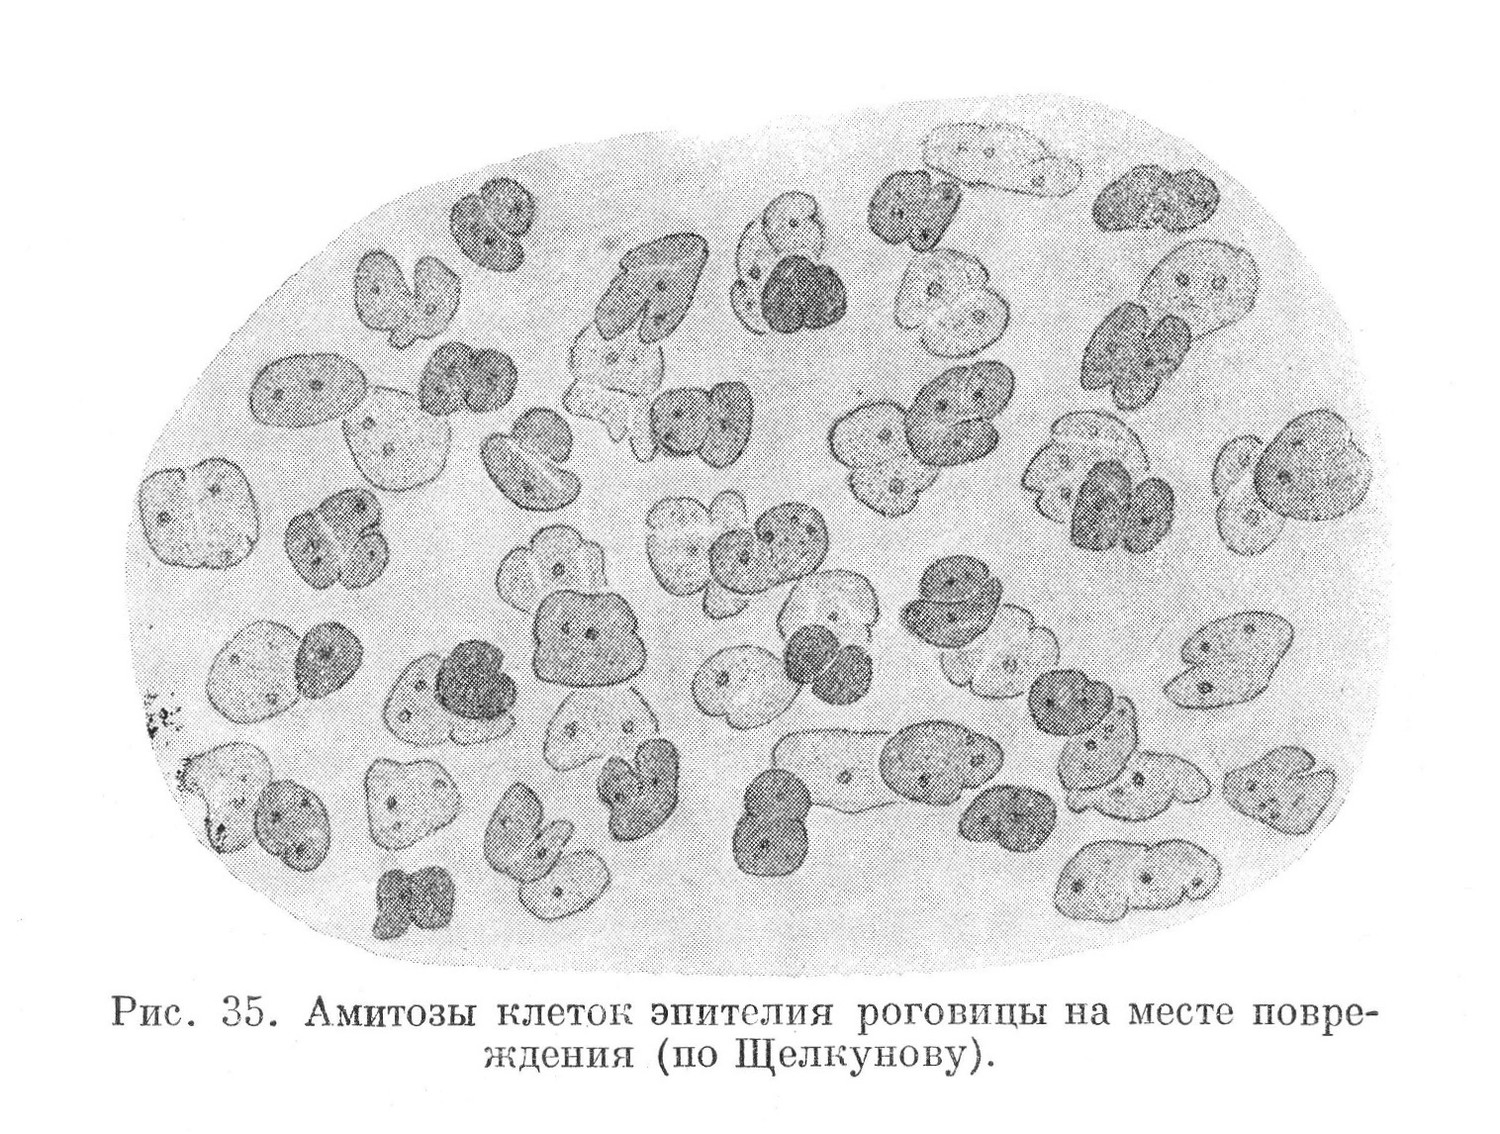 Амитозы клеток эпителия роговицы на месте повреждения (по Щелкунову).